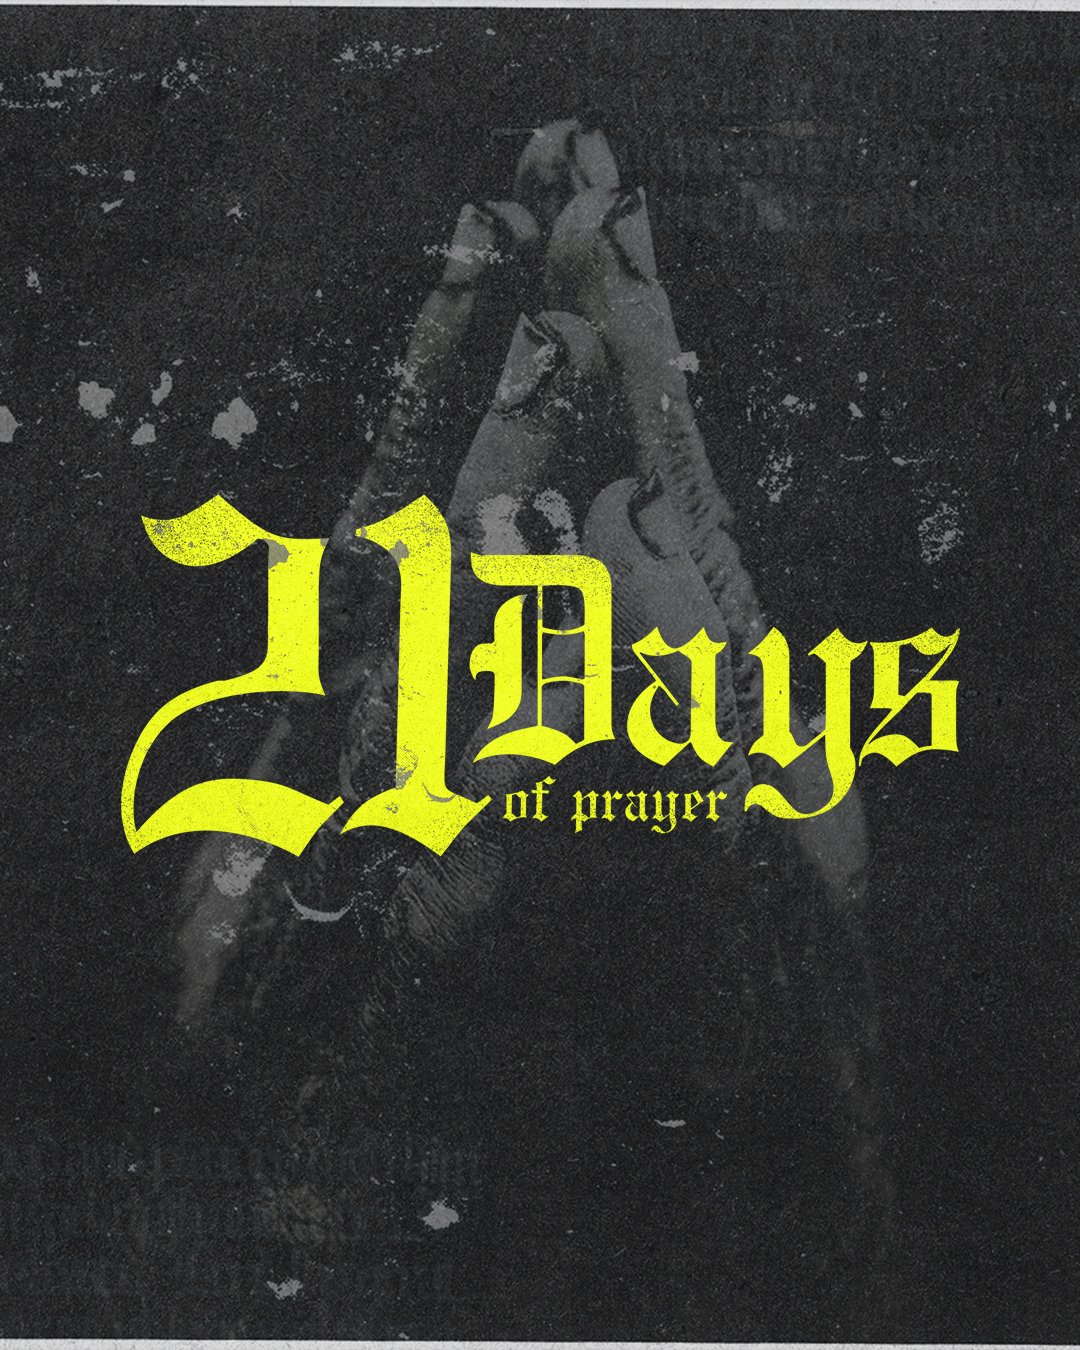 21 Days Of Prayer Social Image.jpg